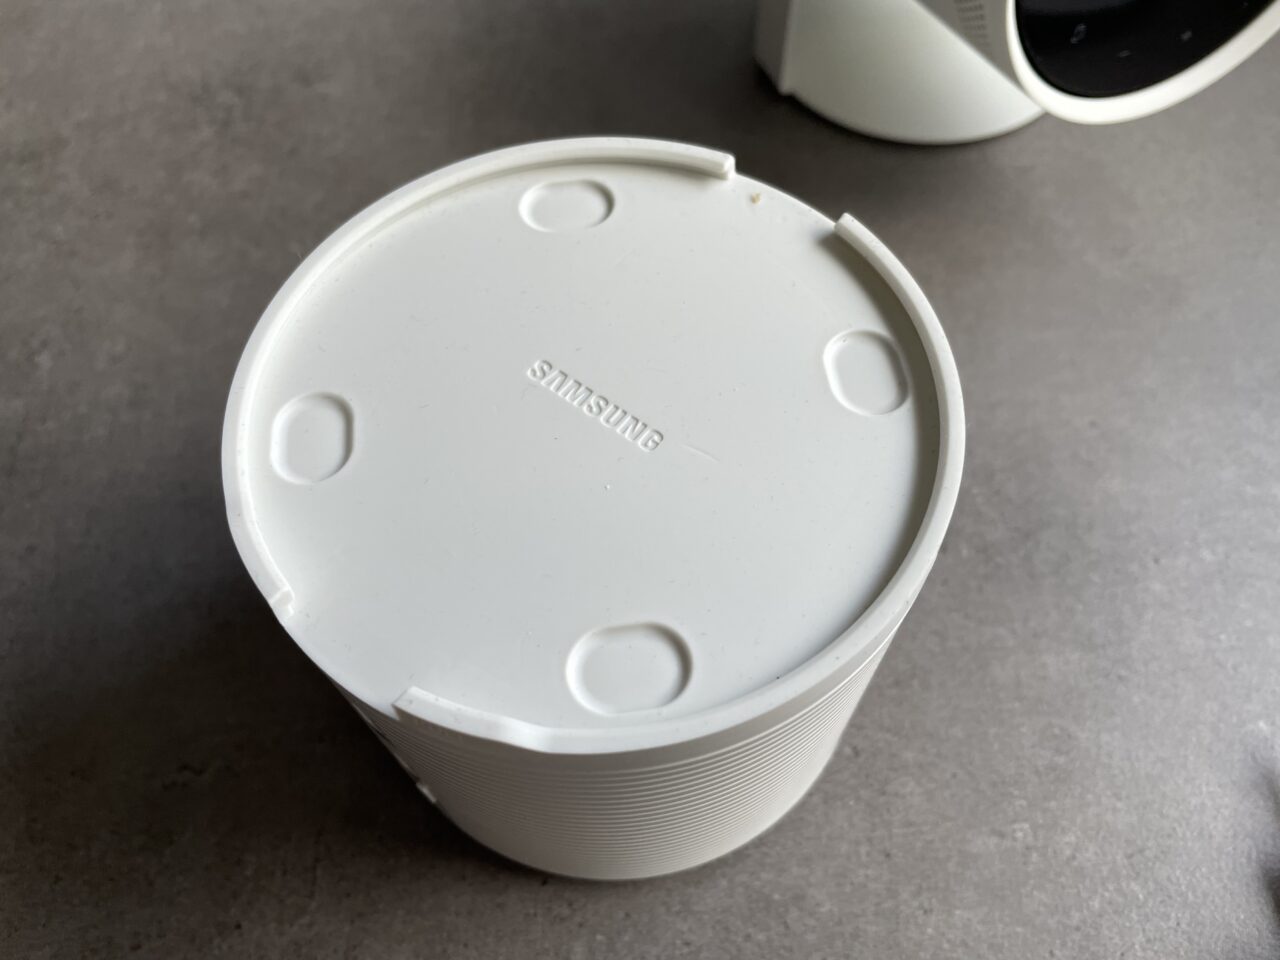 Biała plastikowa pokrywka z logo firmy Samsung na szarym tle obok fragmentu urządzenia w kolorze białym.